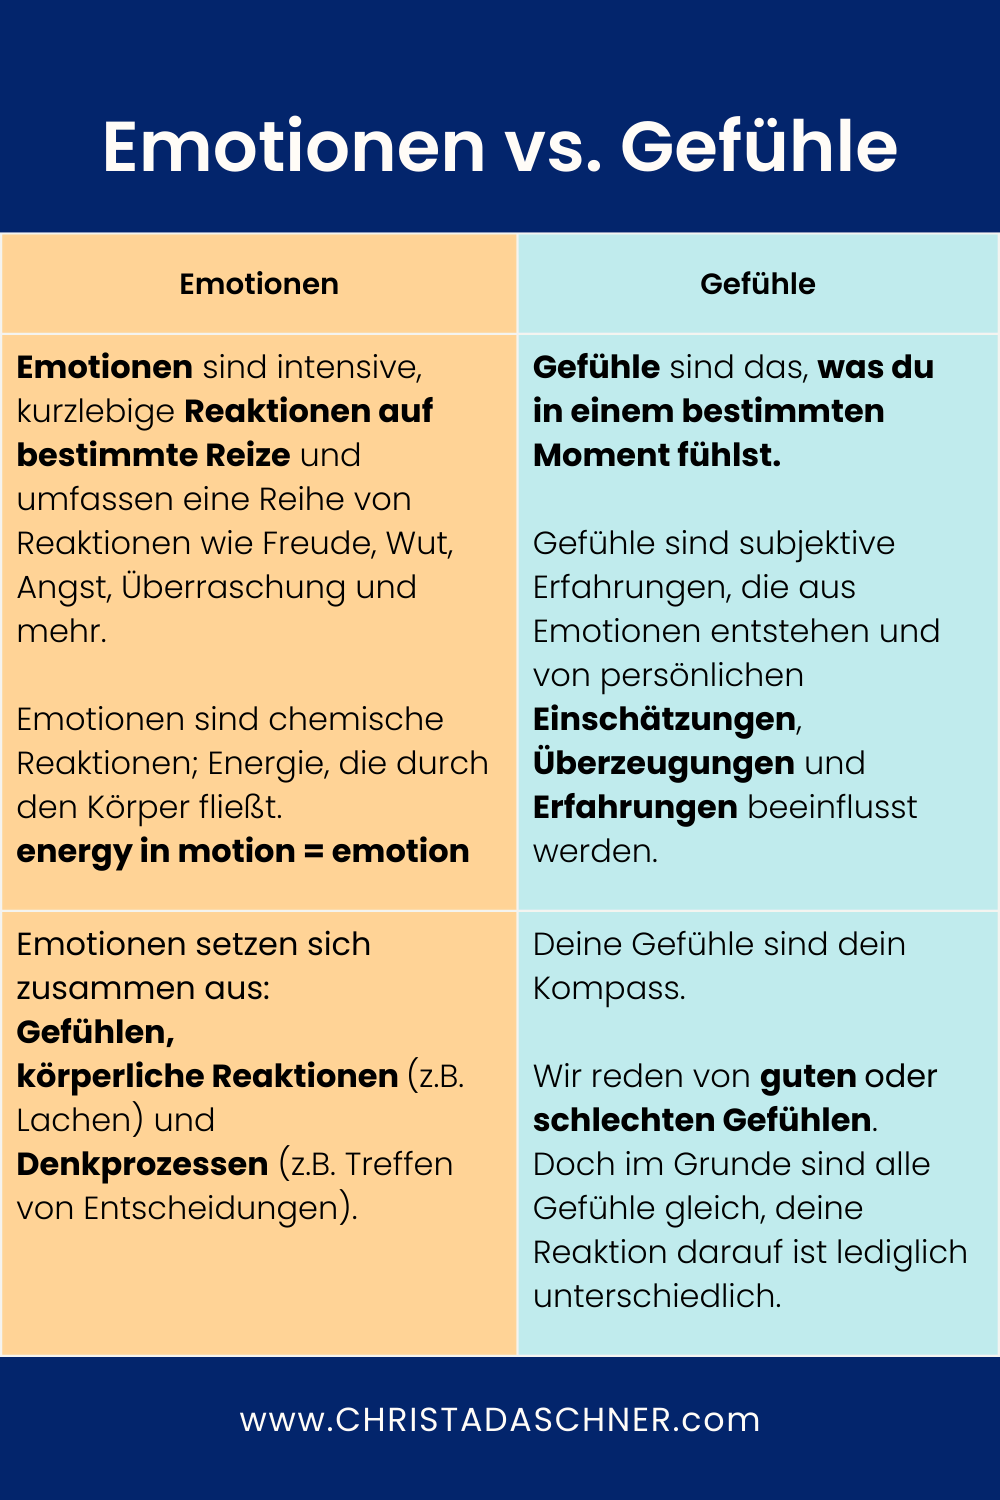 Christa Daschner, Emotionen versus Gefühle